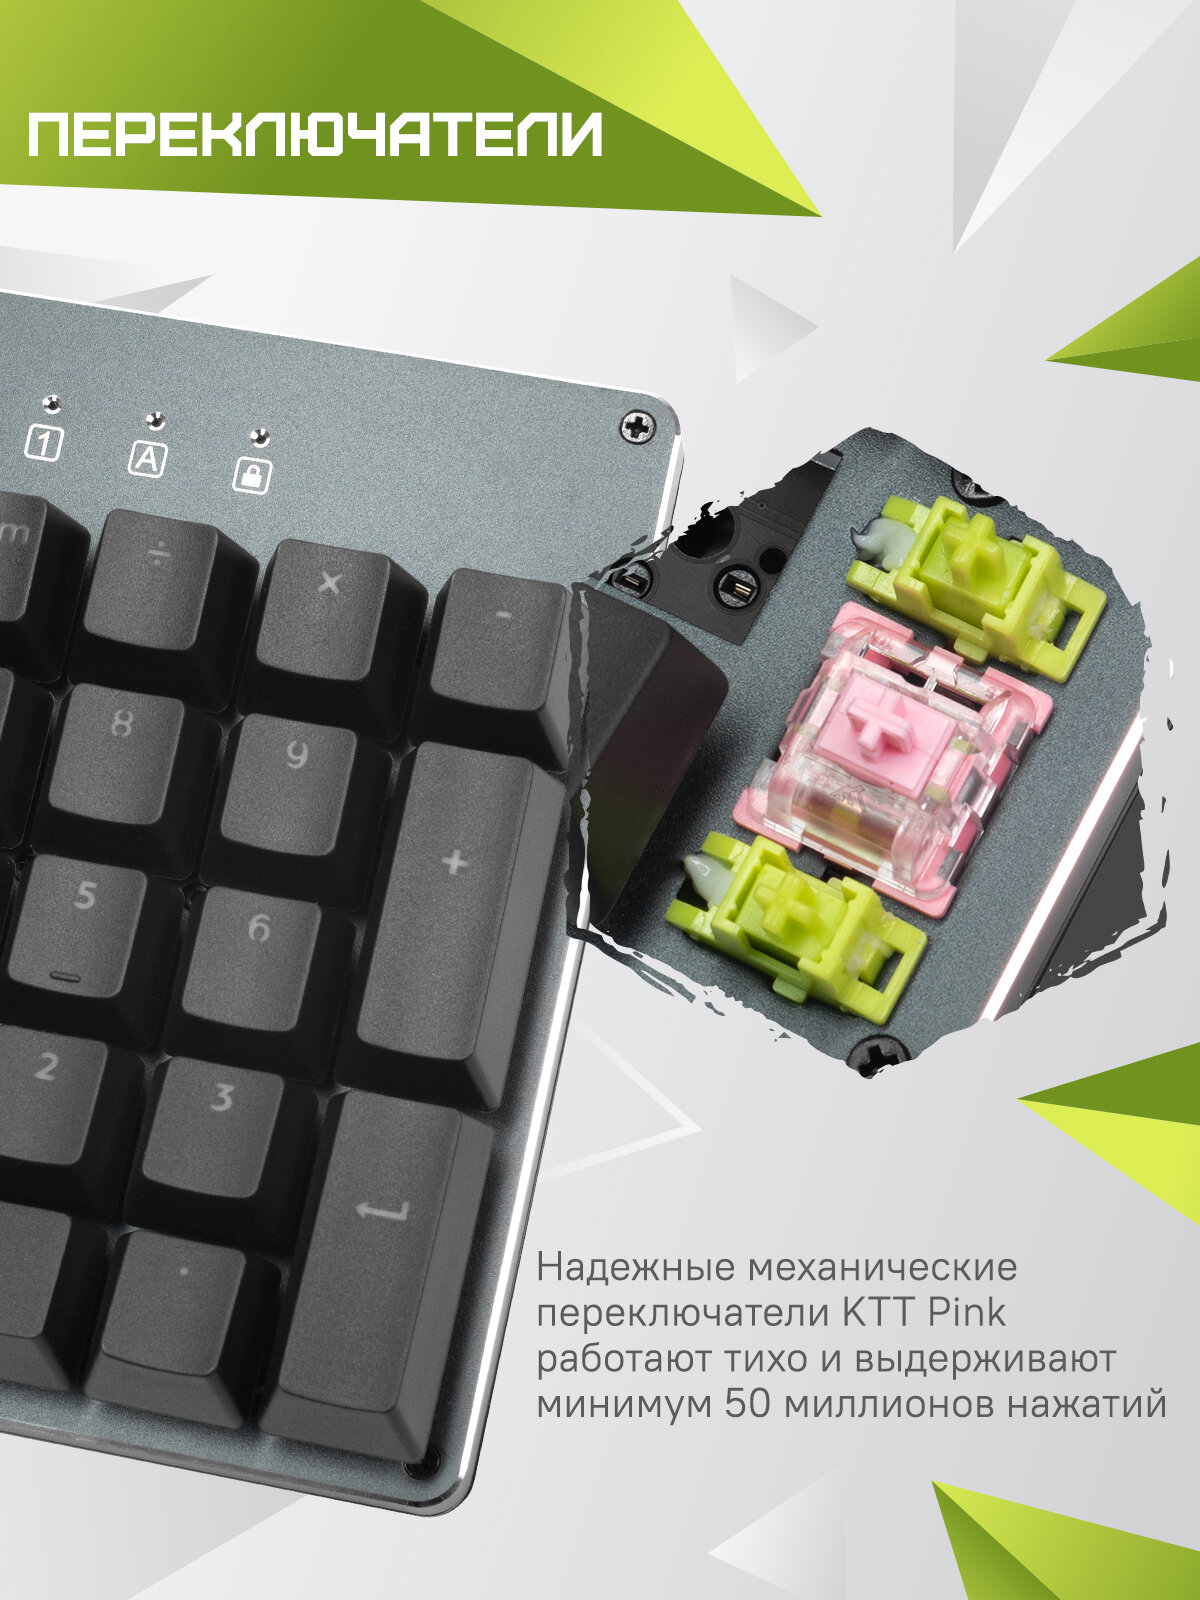 Механическая игровая клавиатура ZONE 51 - фото №5